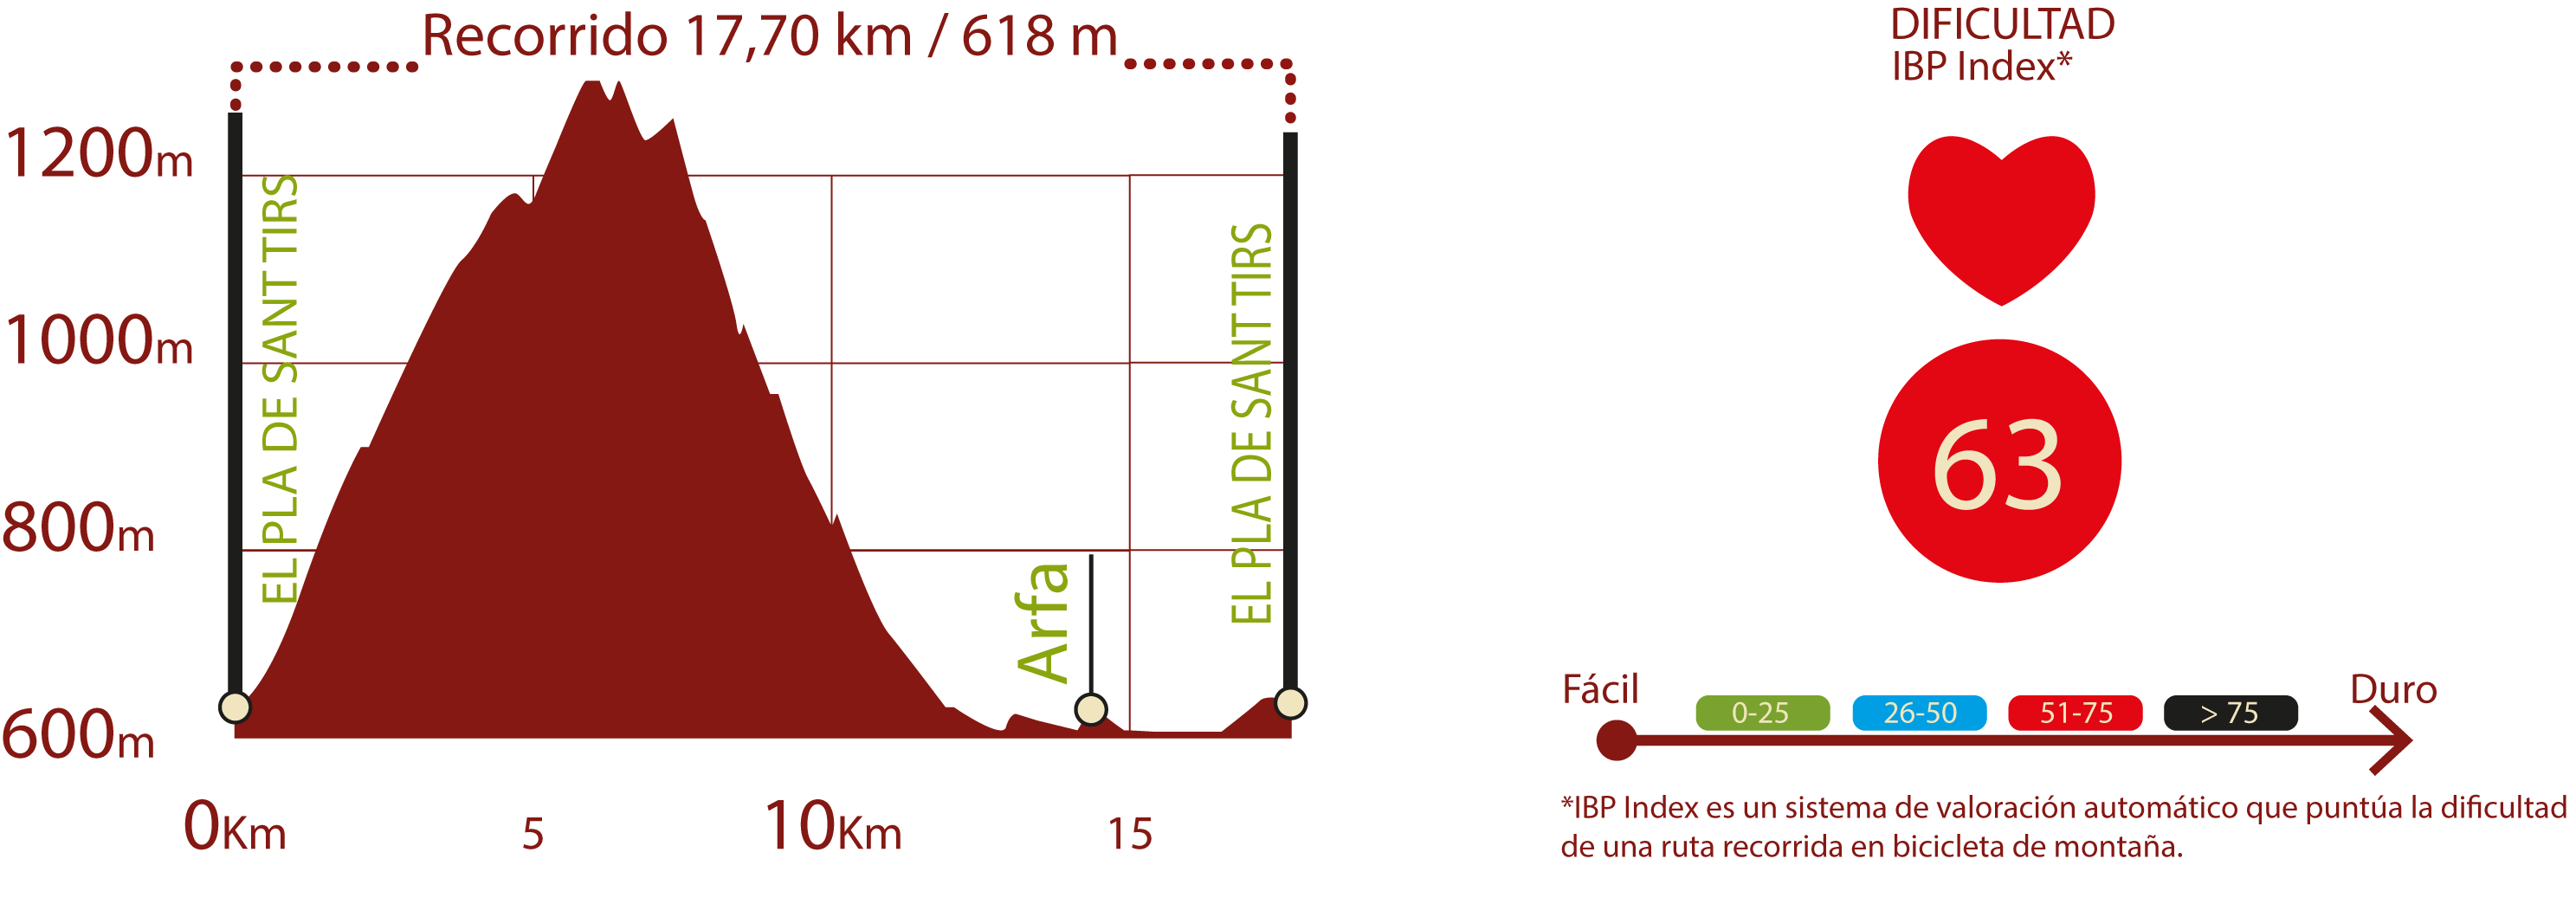 Perfil e IBP
Perfil del recorrido del CN de Les Mines: 17,7 km / Desnivel de subida 618 m
IBP 63: Dificil

